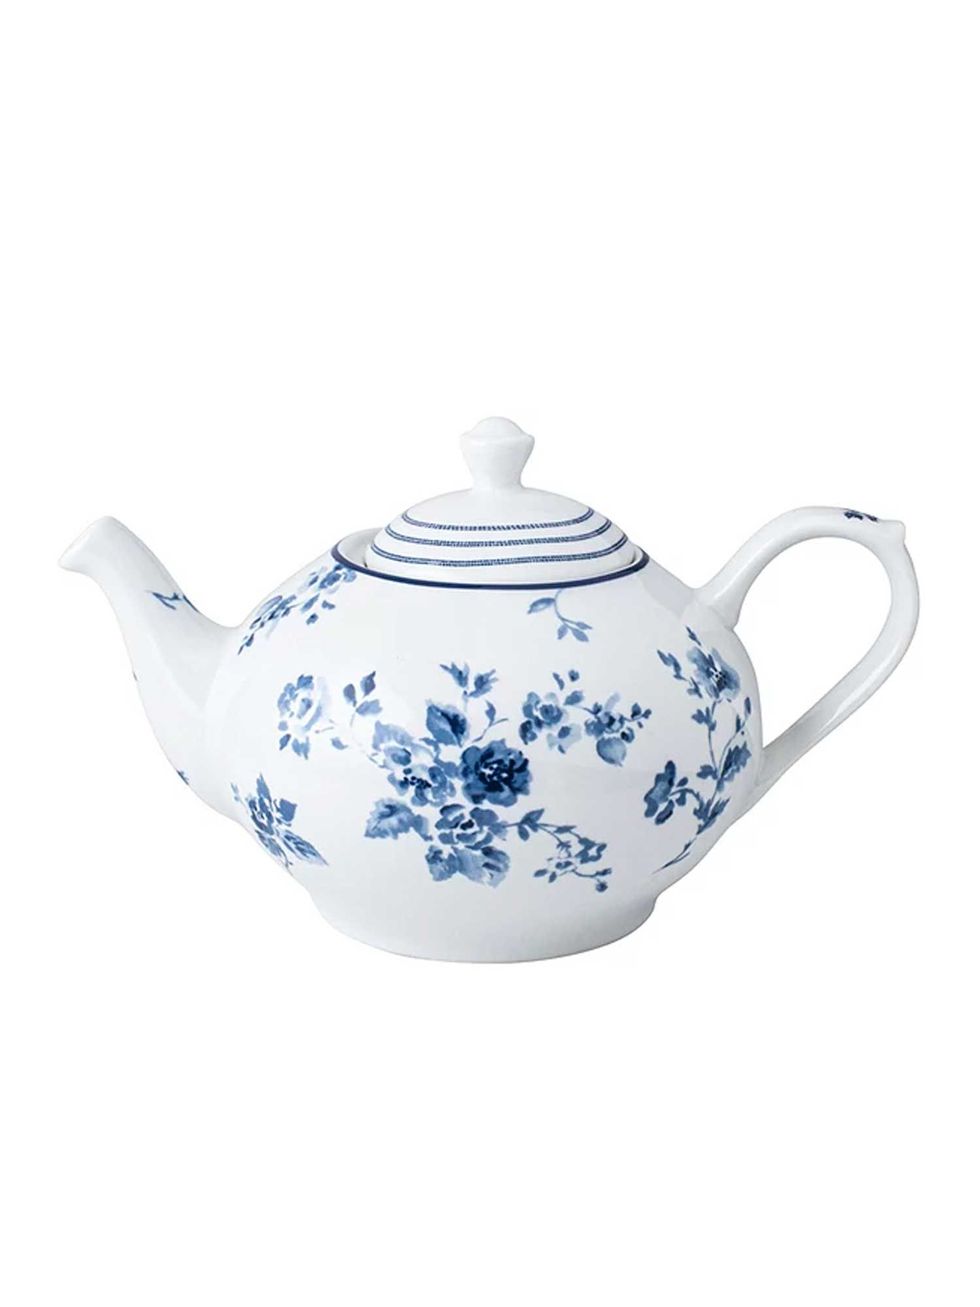 Blueprint China Rose Teapot, 1.6L, Blue/White